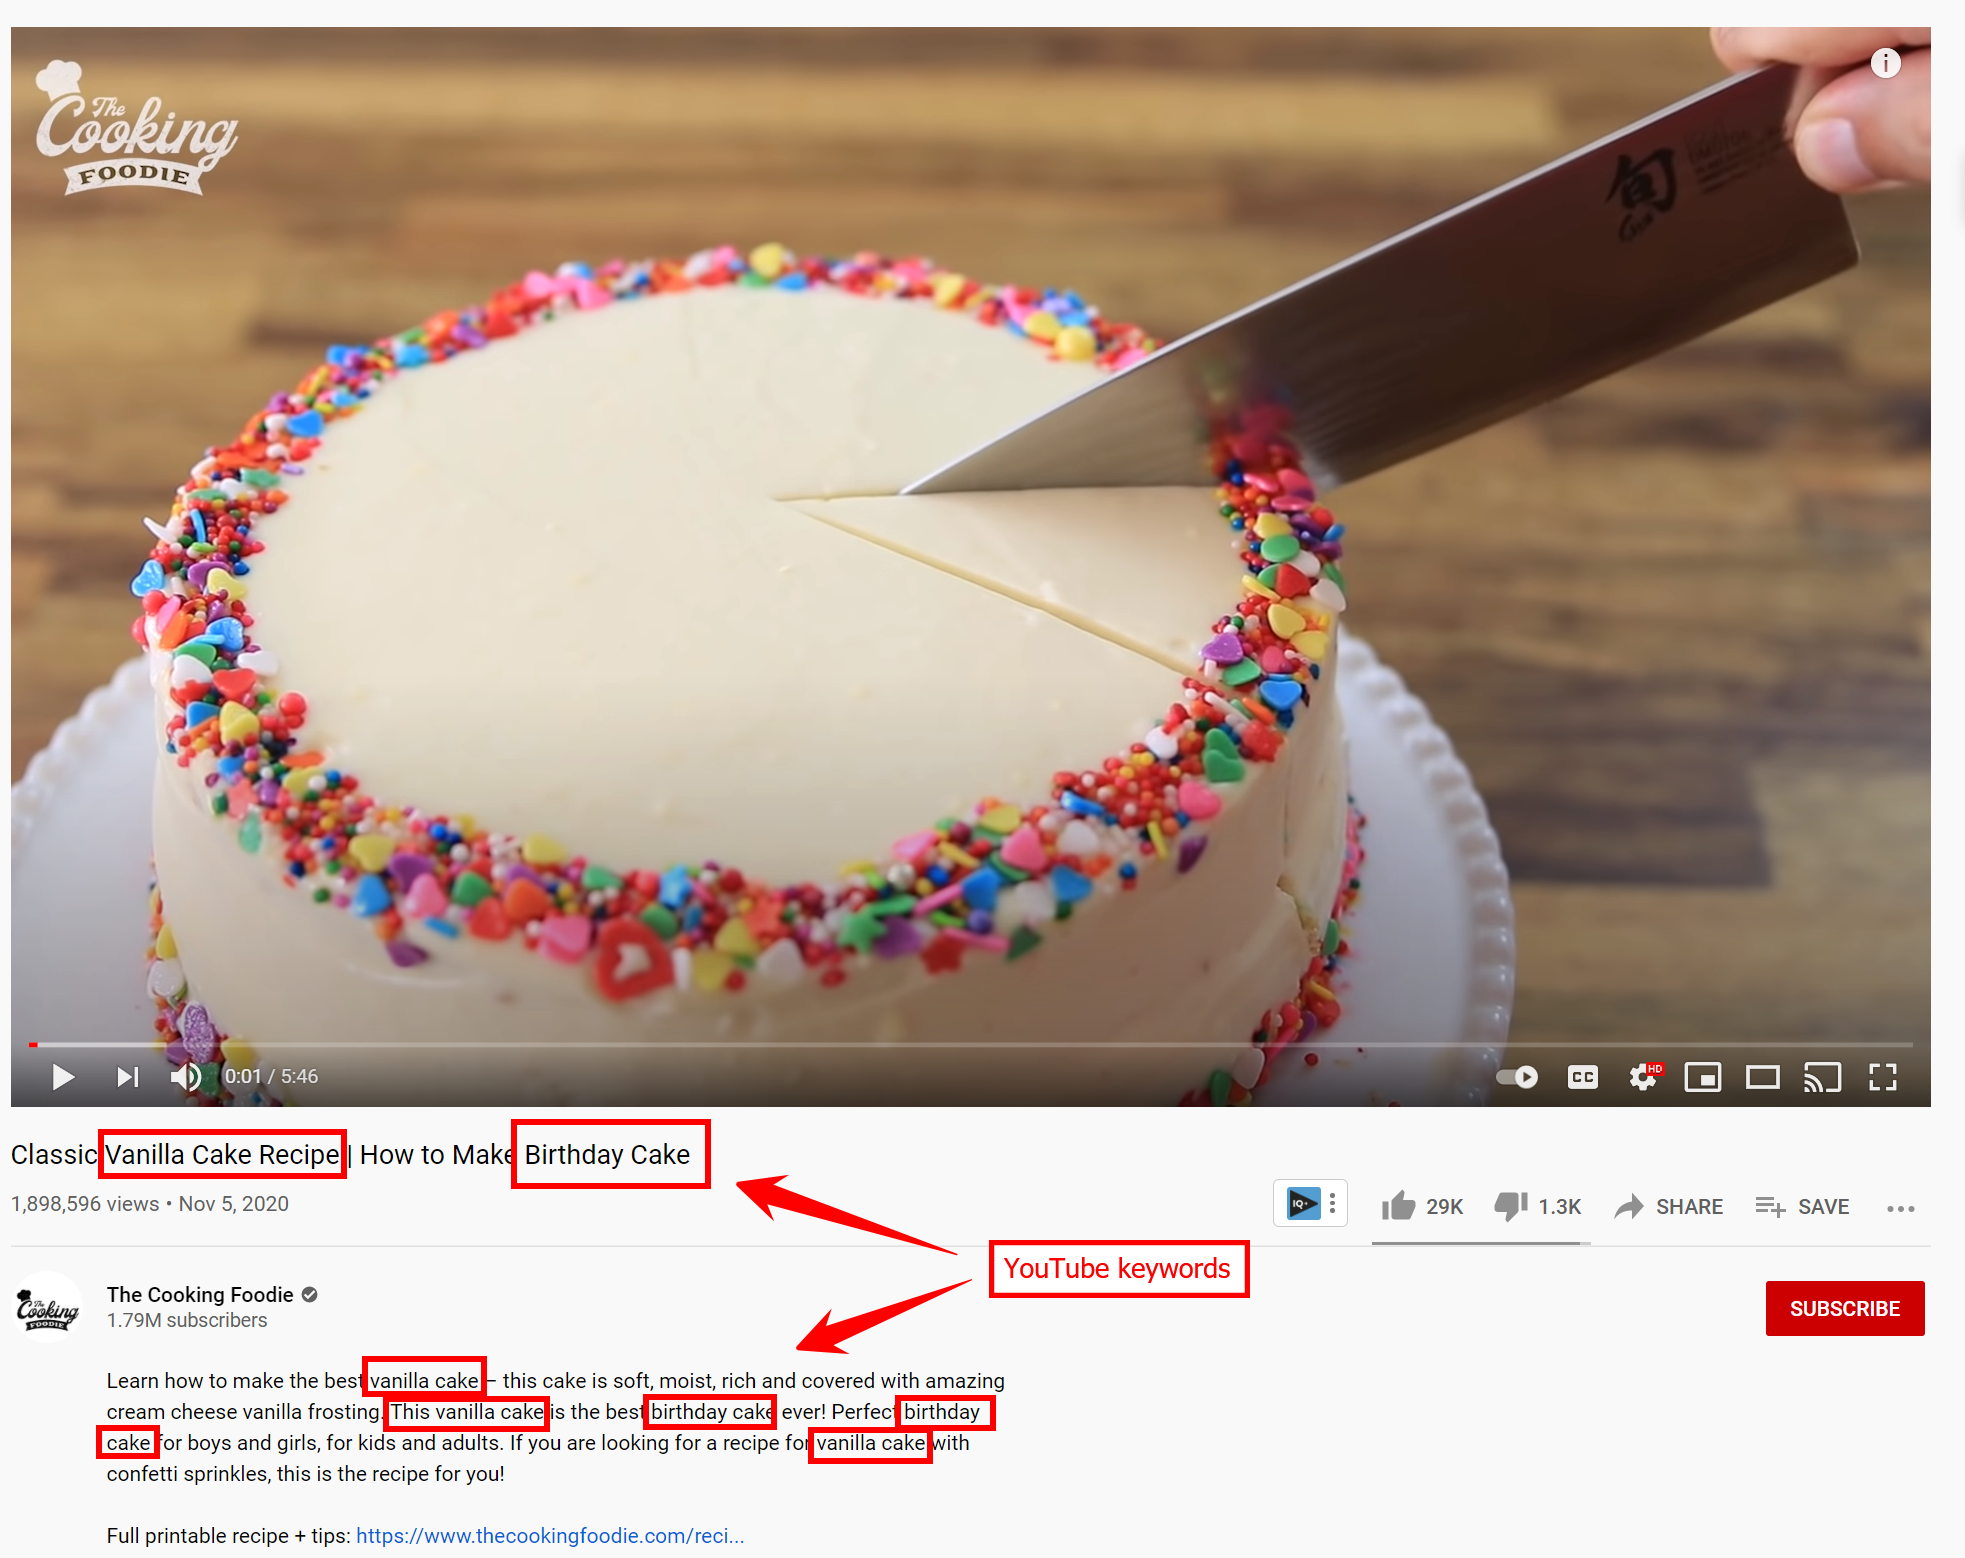 用于视频标题和描述蛋糕内容的与蛋糕相关的关键词